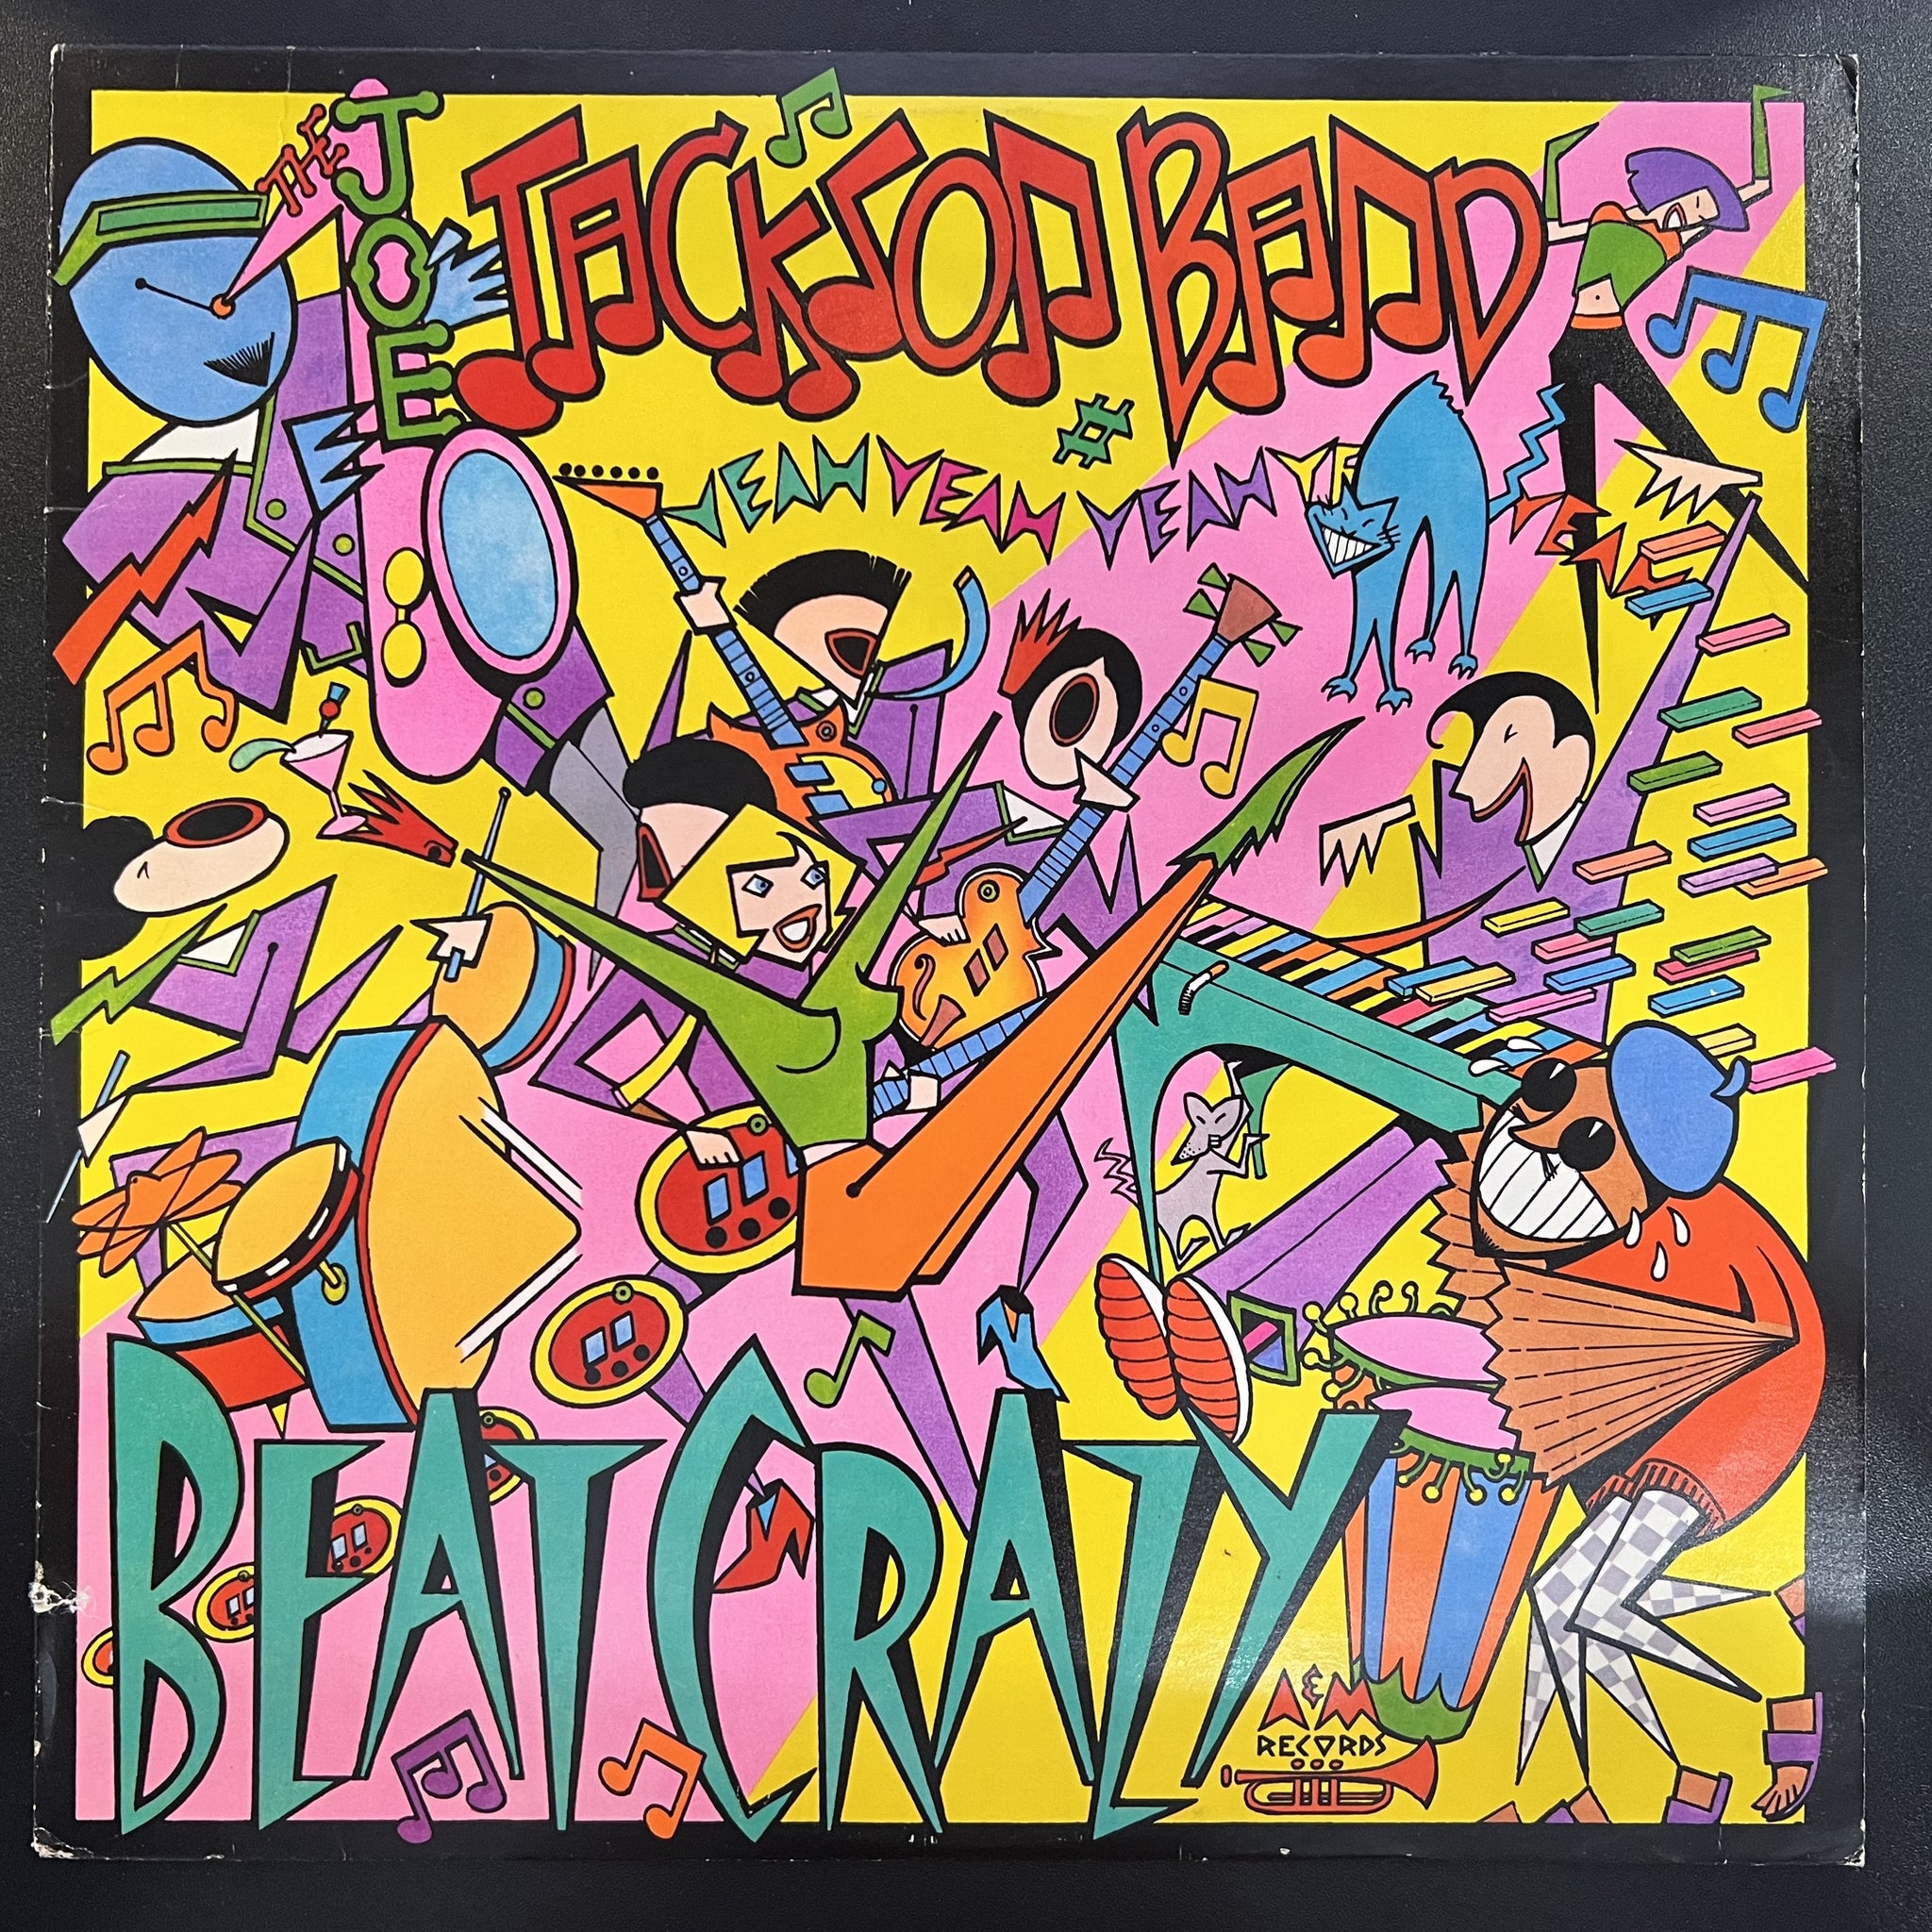 Joe Jackson Band – Beat Crazy - VG+ LP Record 1980 A&M USA Vinyl - Power Pop / Ska